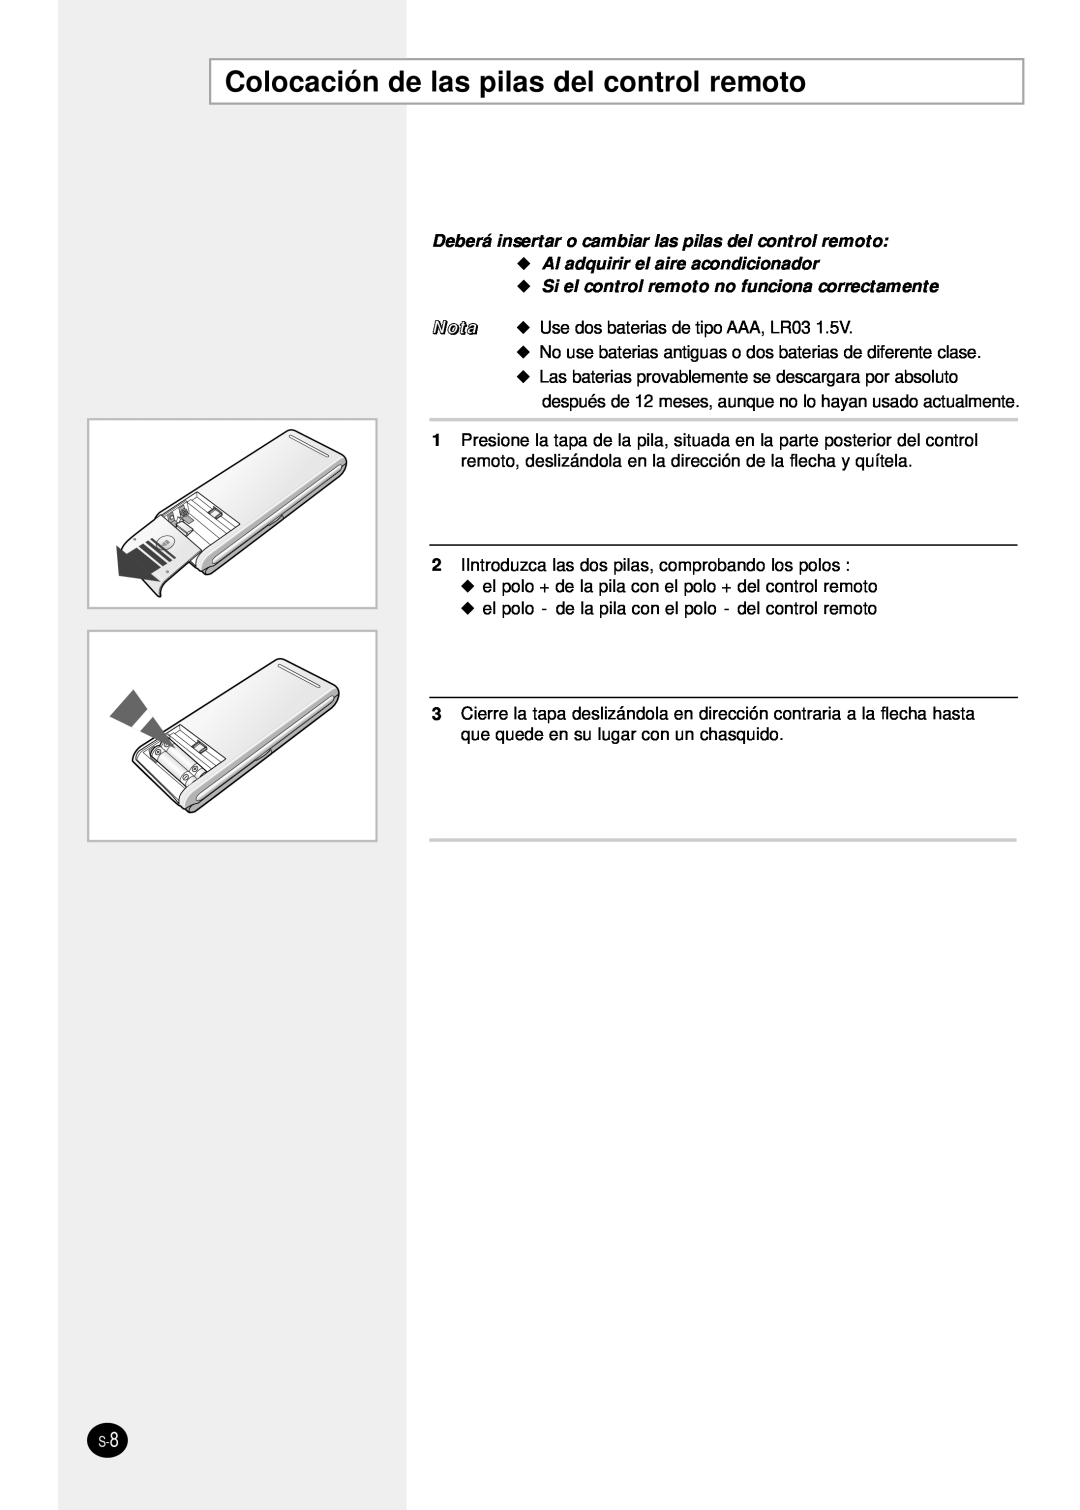 Samsung SH24TP6 manual Colocación de las pilas del control remoto, Deberá insertar o cambiar las pilas del control remoto 